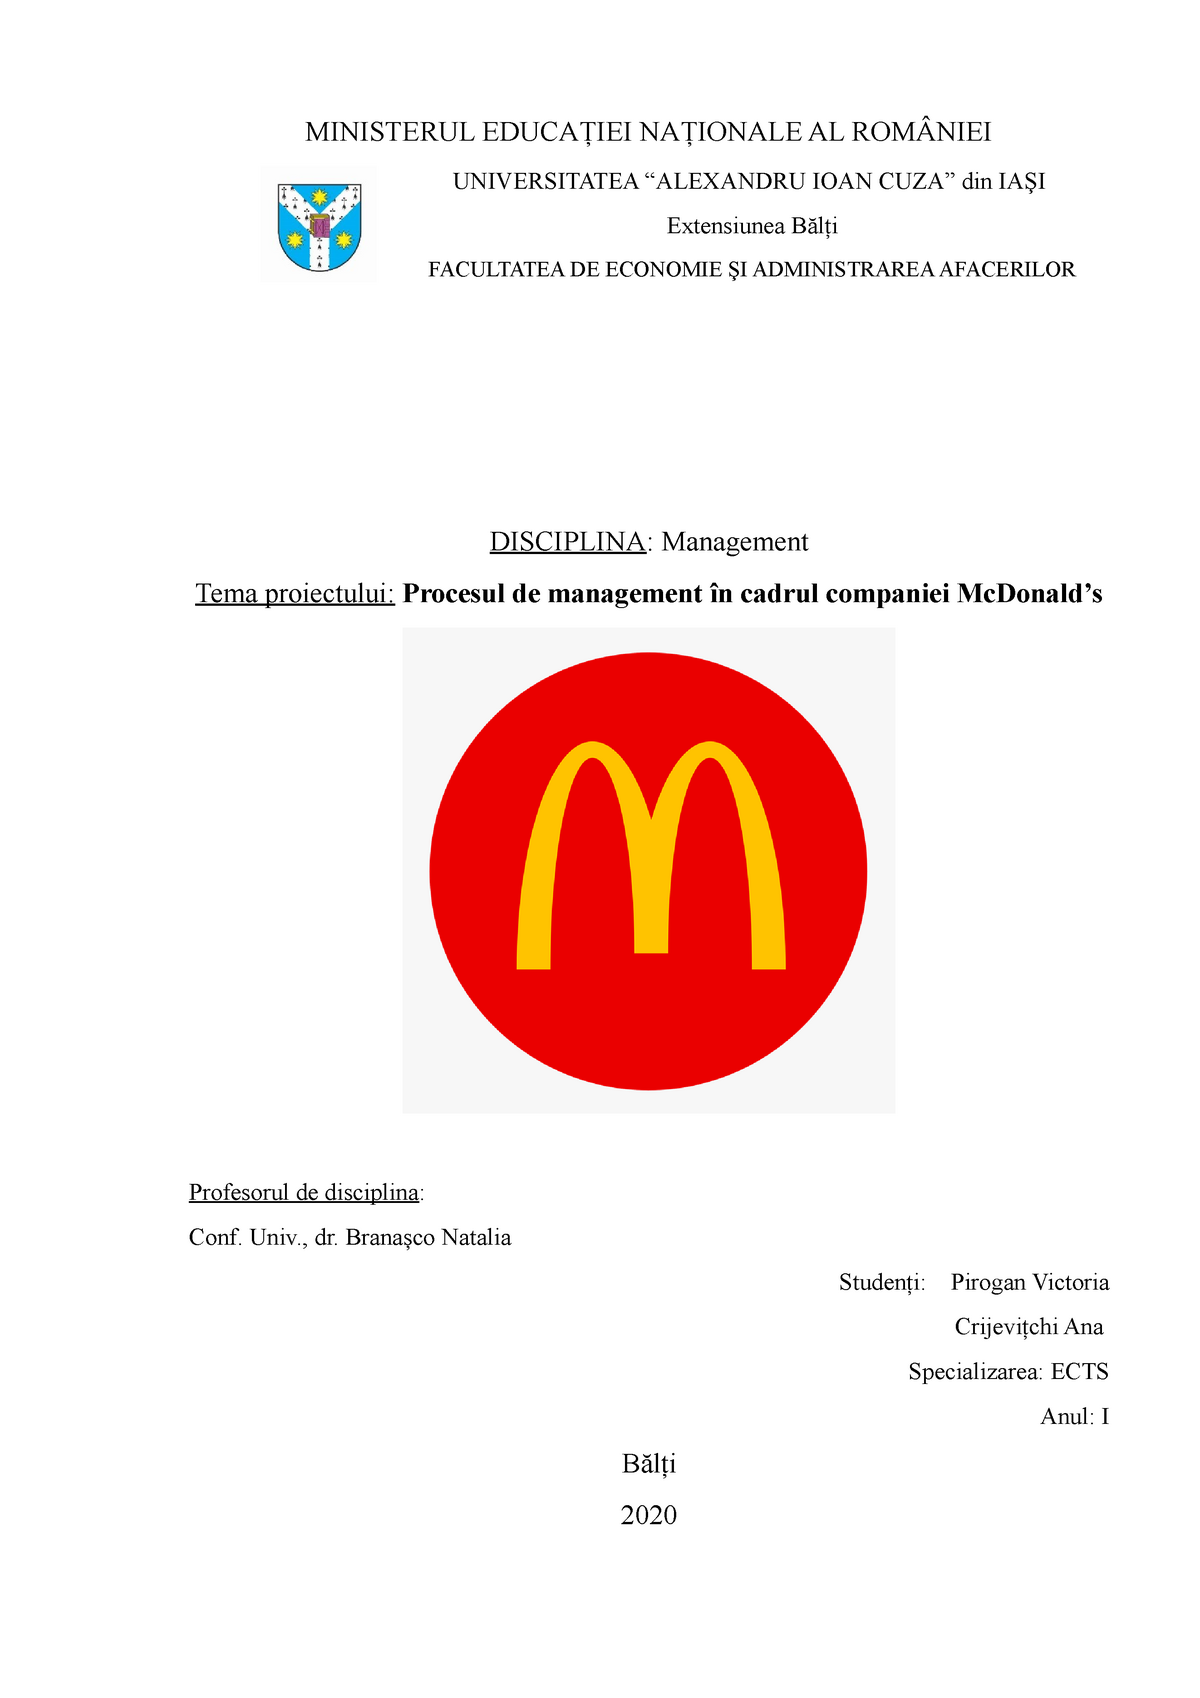 Comorama Whose stay Proiect management McDonald's - MINISTERUL EDUCAŢIEI NAŢIONALE AL ROMÂNIEI  UNIVERSITATEA “ALEXANDRU - StuDocu